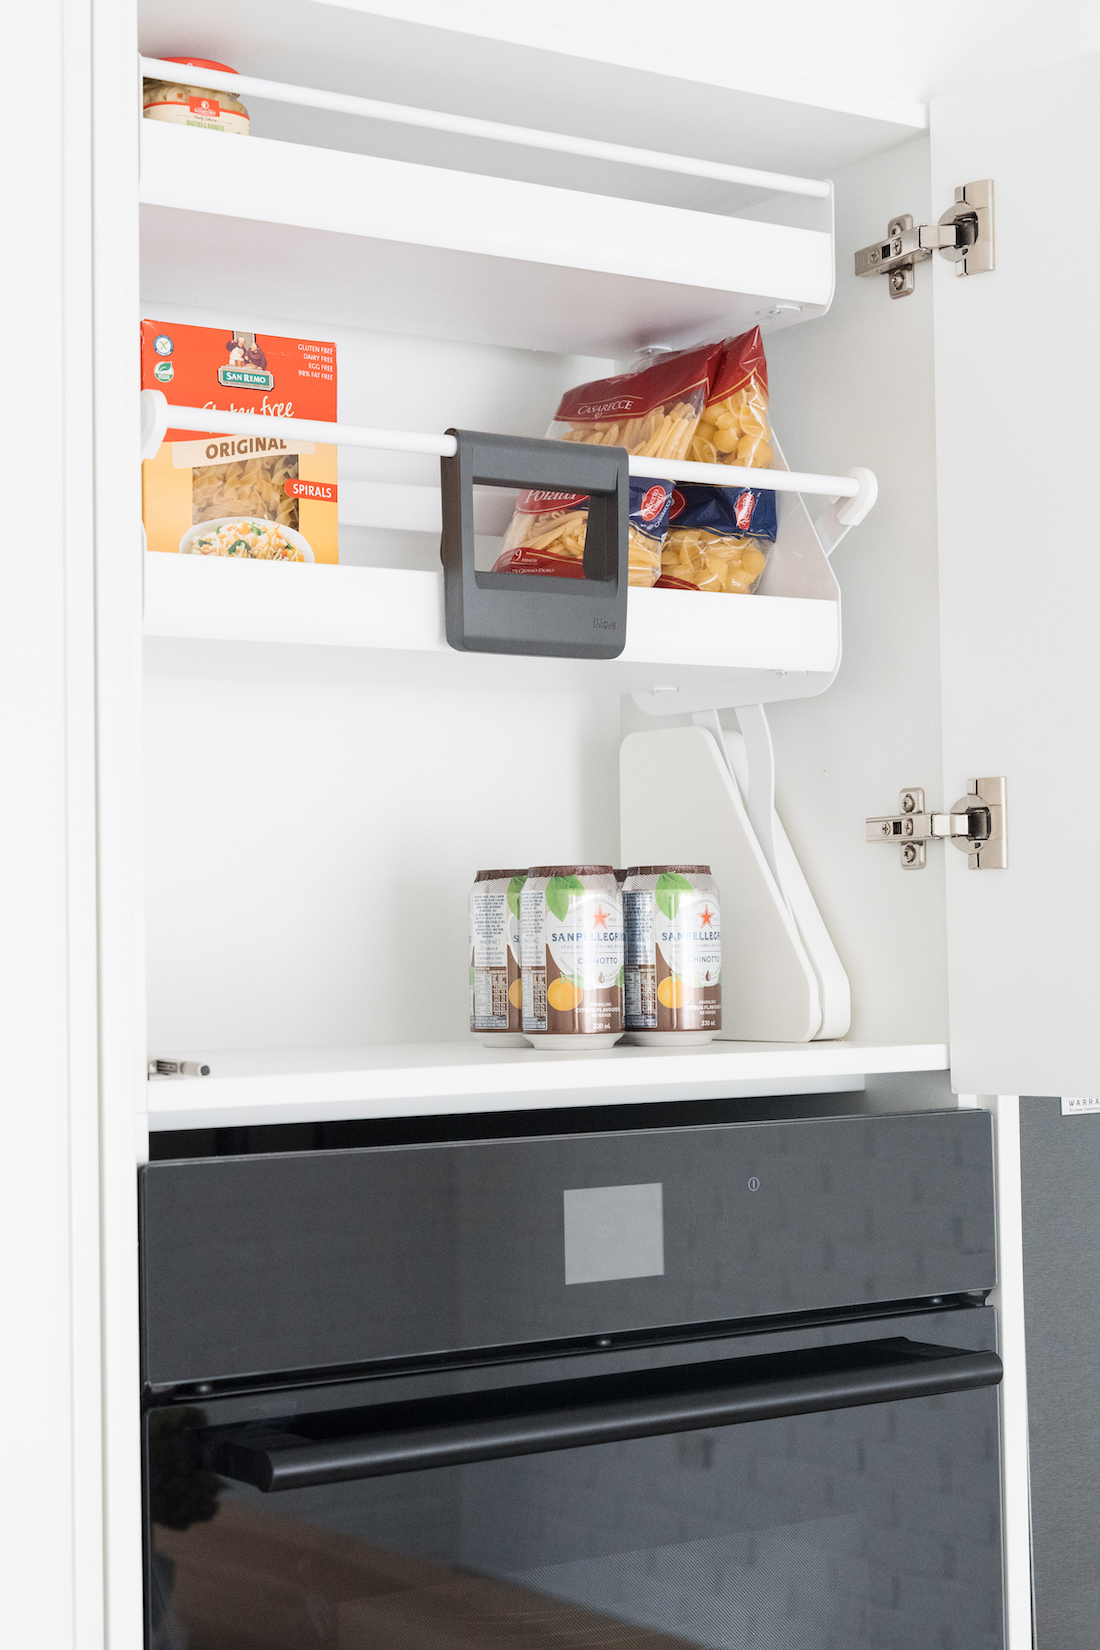 iMove shelf in cupboard